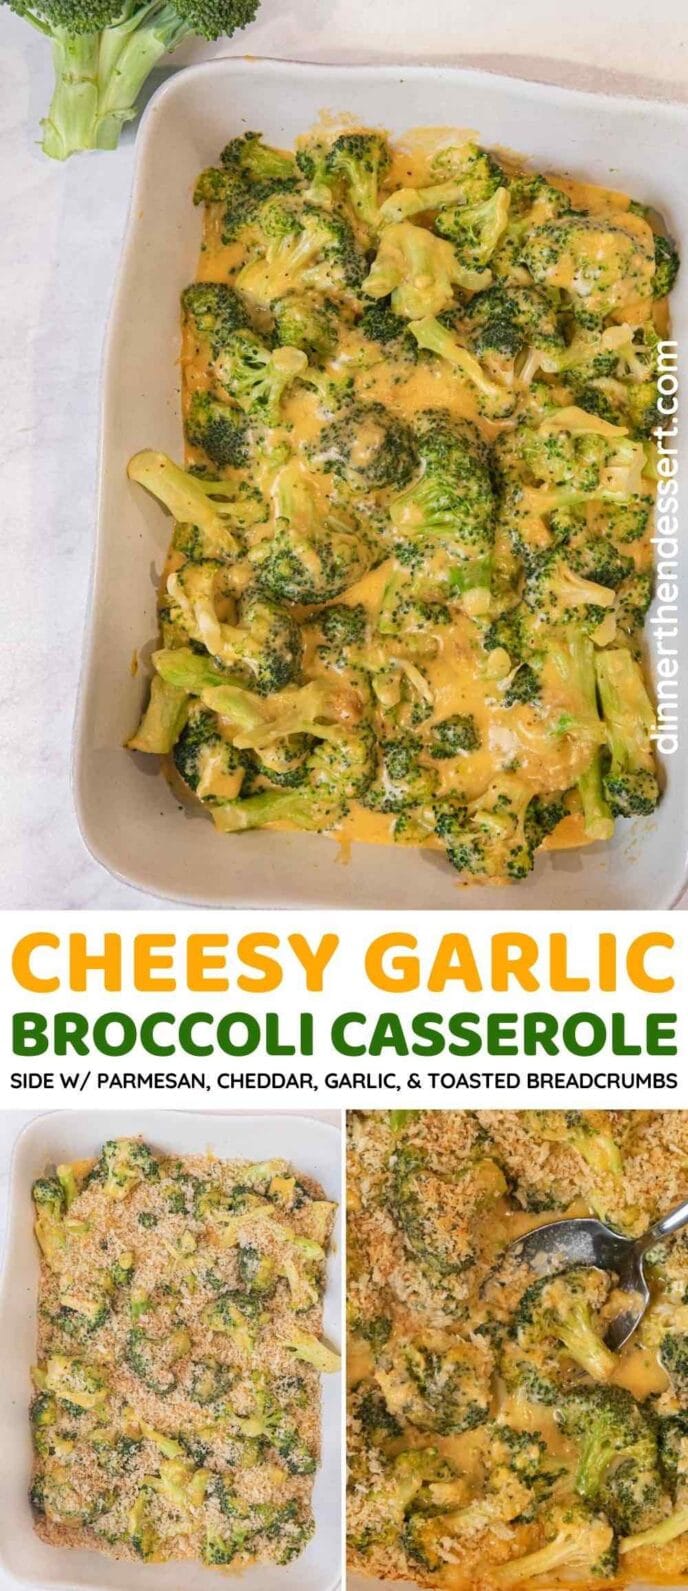 Cheesy Garlic Broccoli Casserole recipe